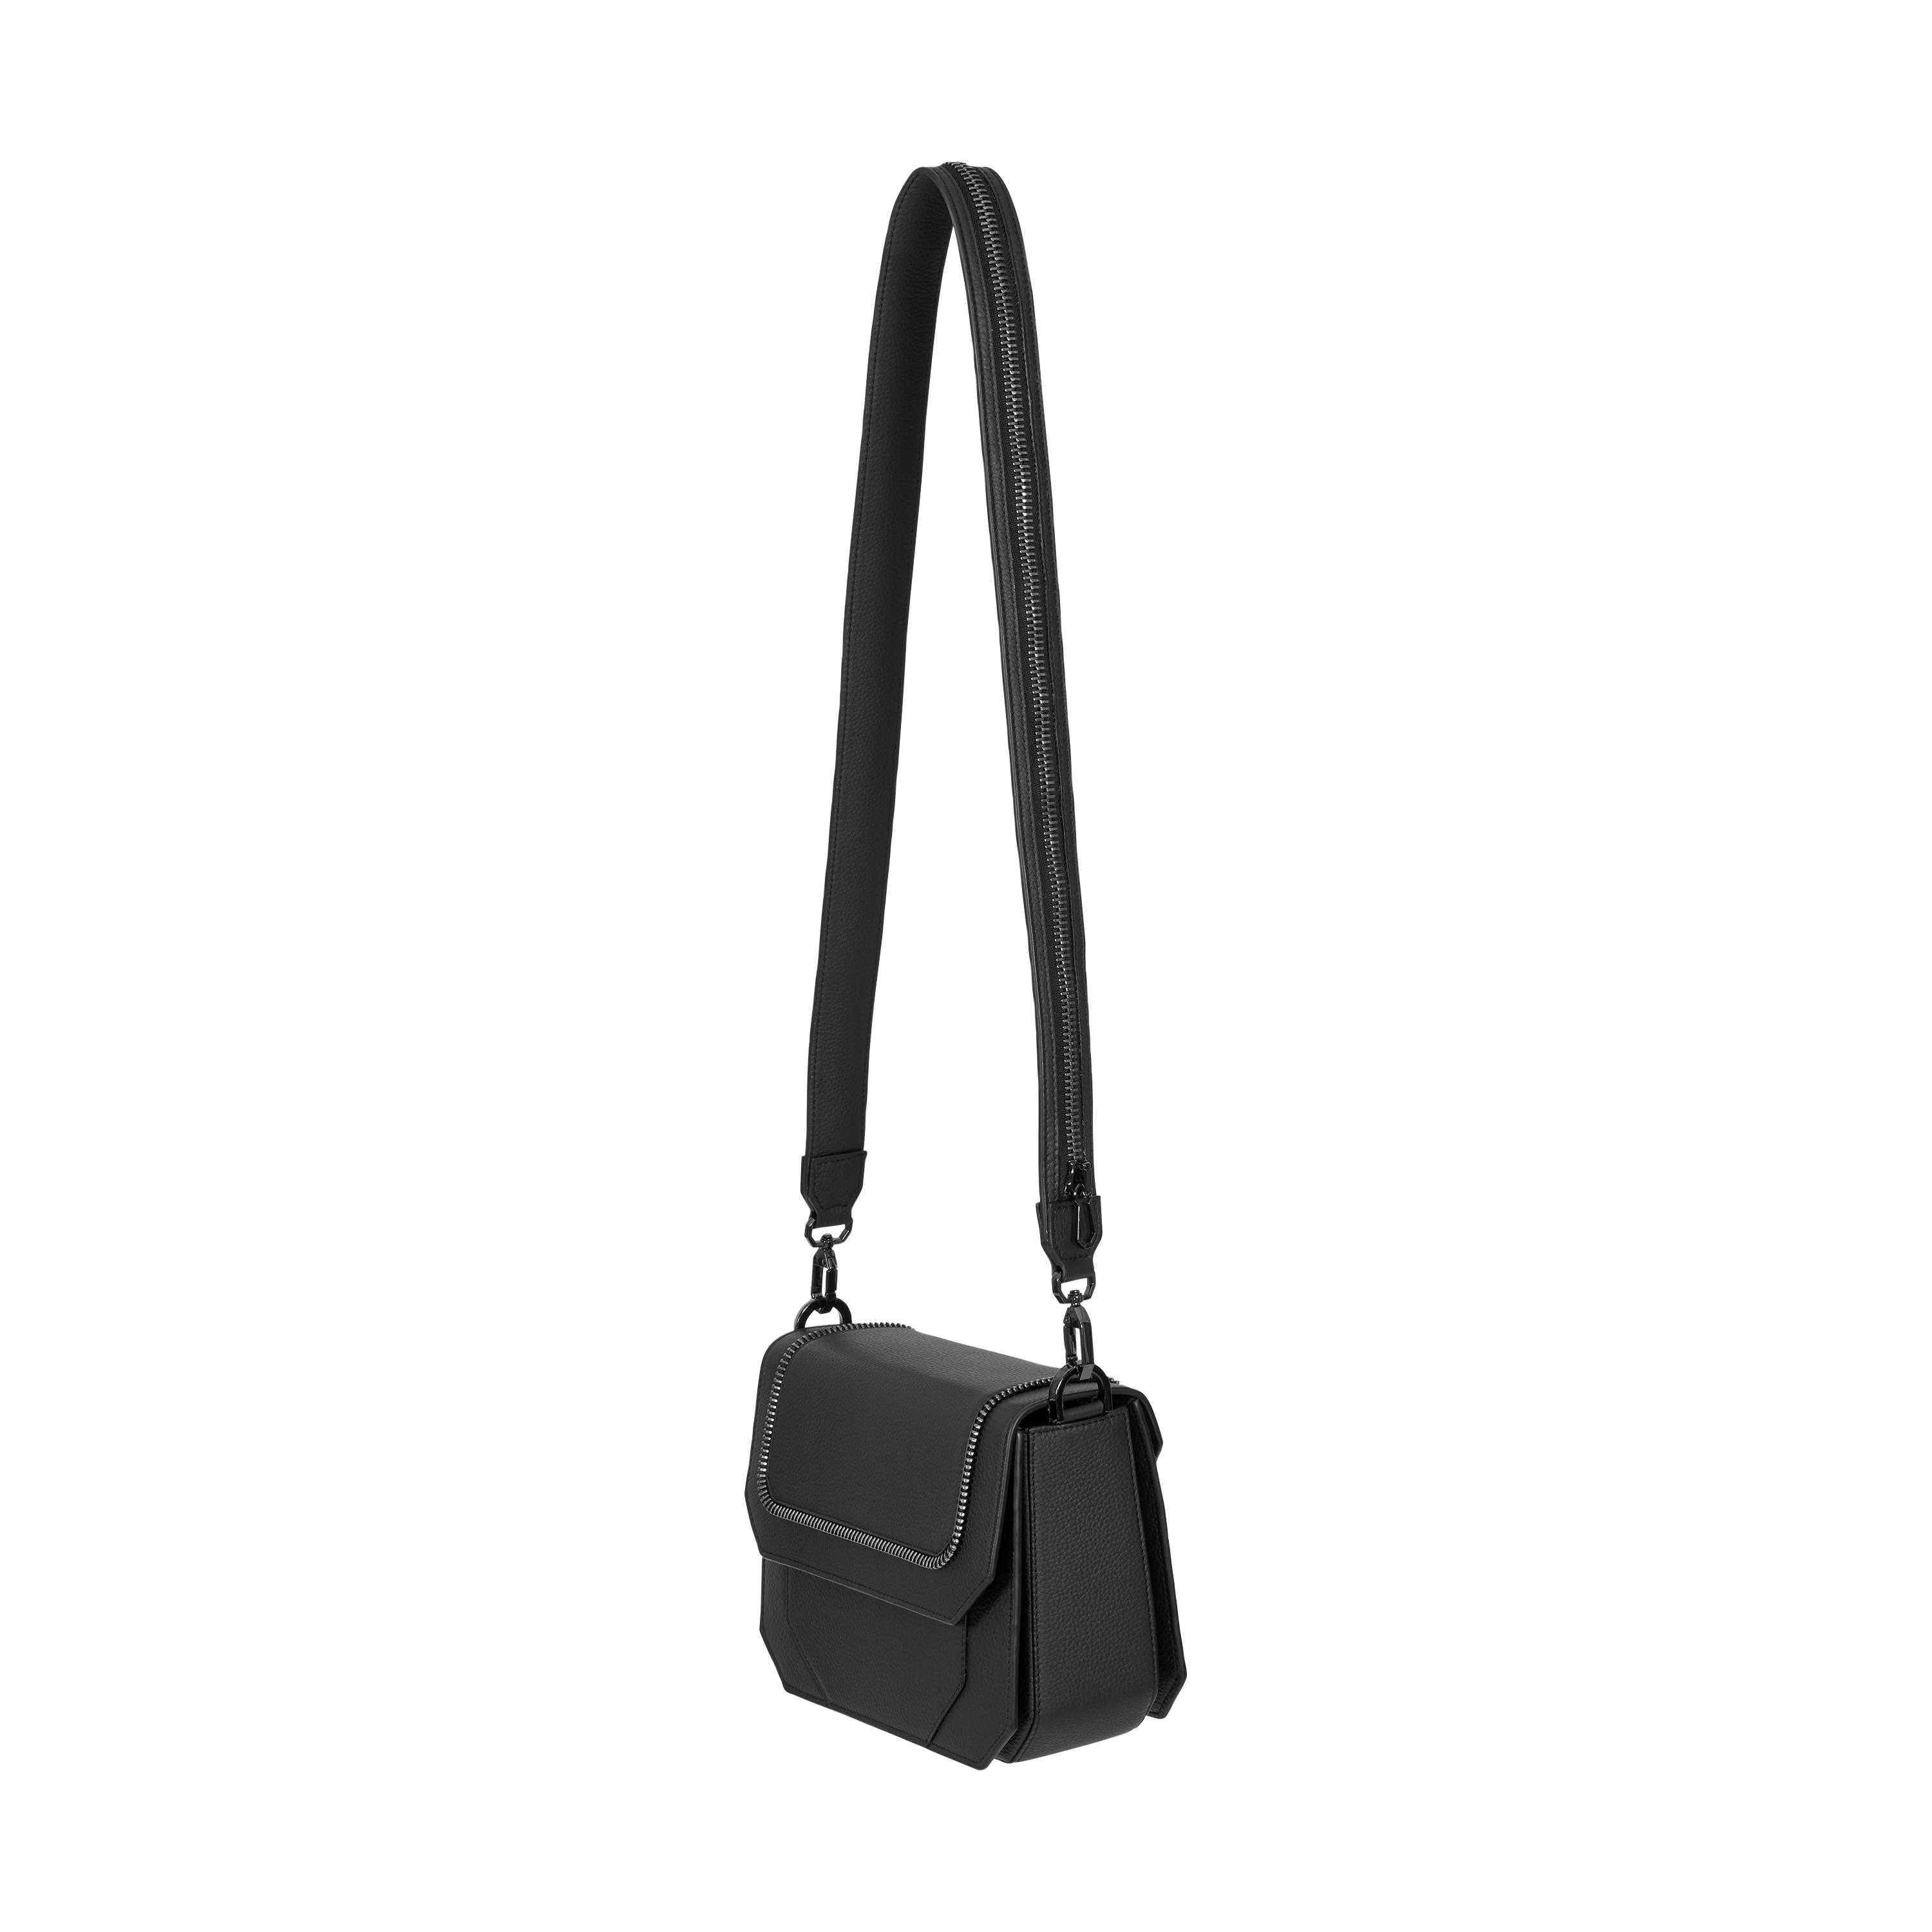 Bag calf black gun metal